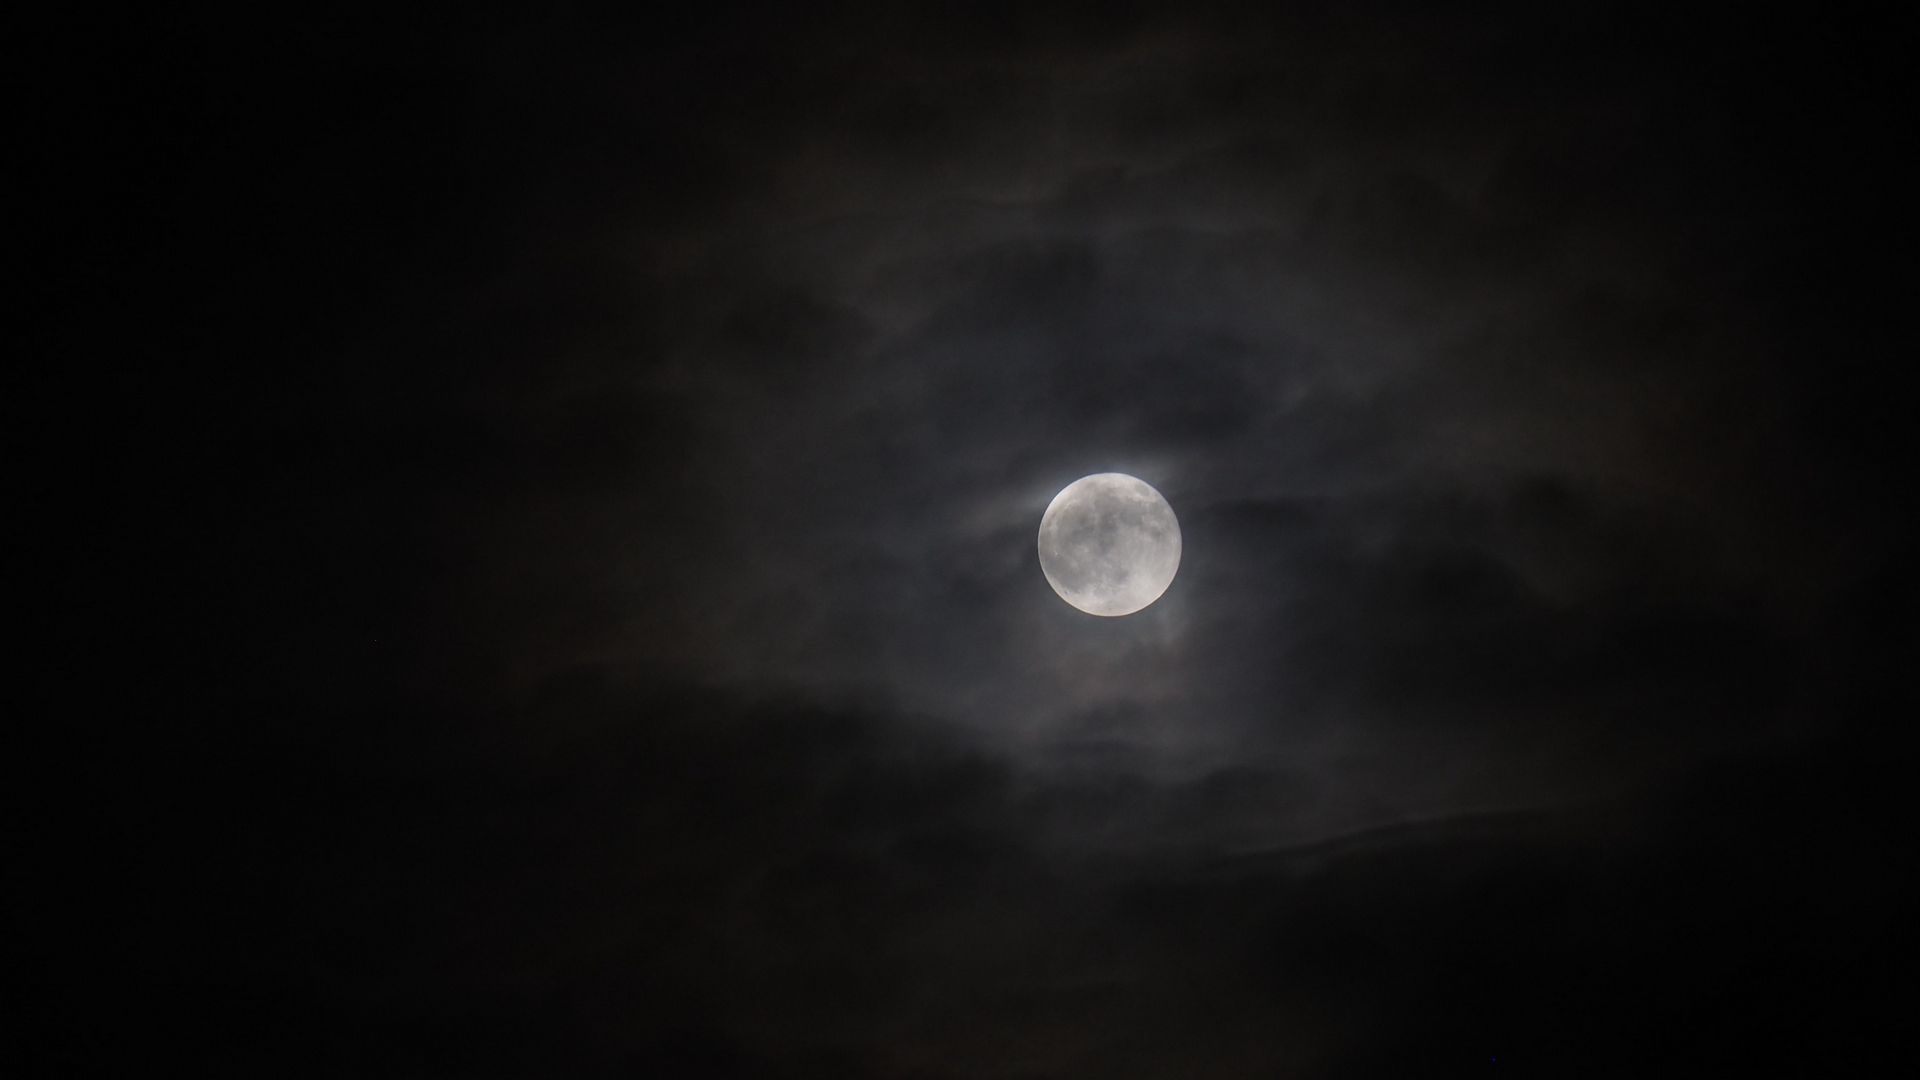 Download wallpaper 1920x1080 full moon, moon, clouds, night, bw full hd ...